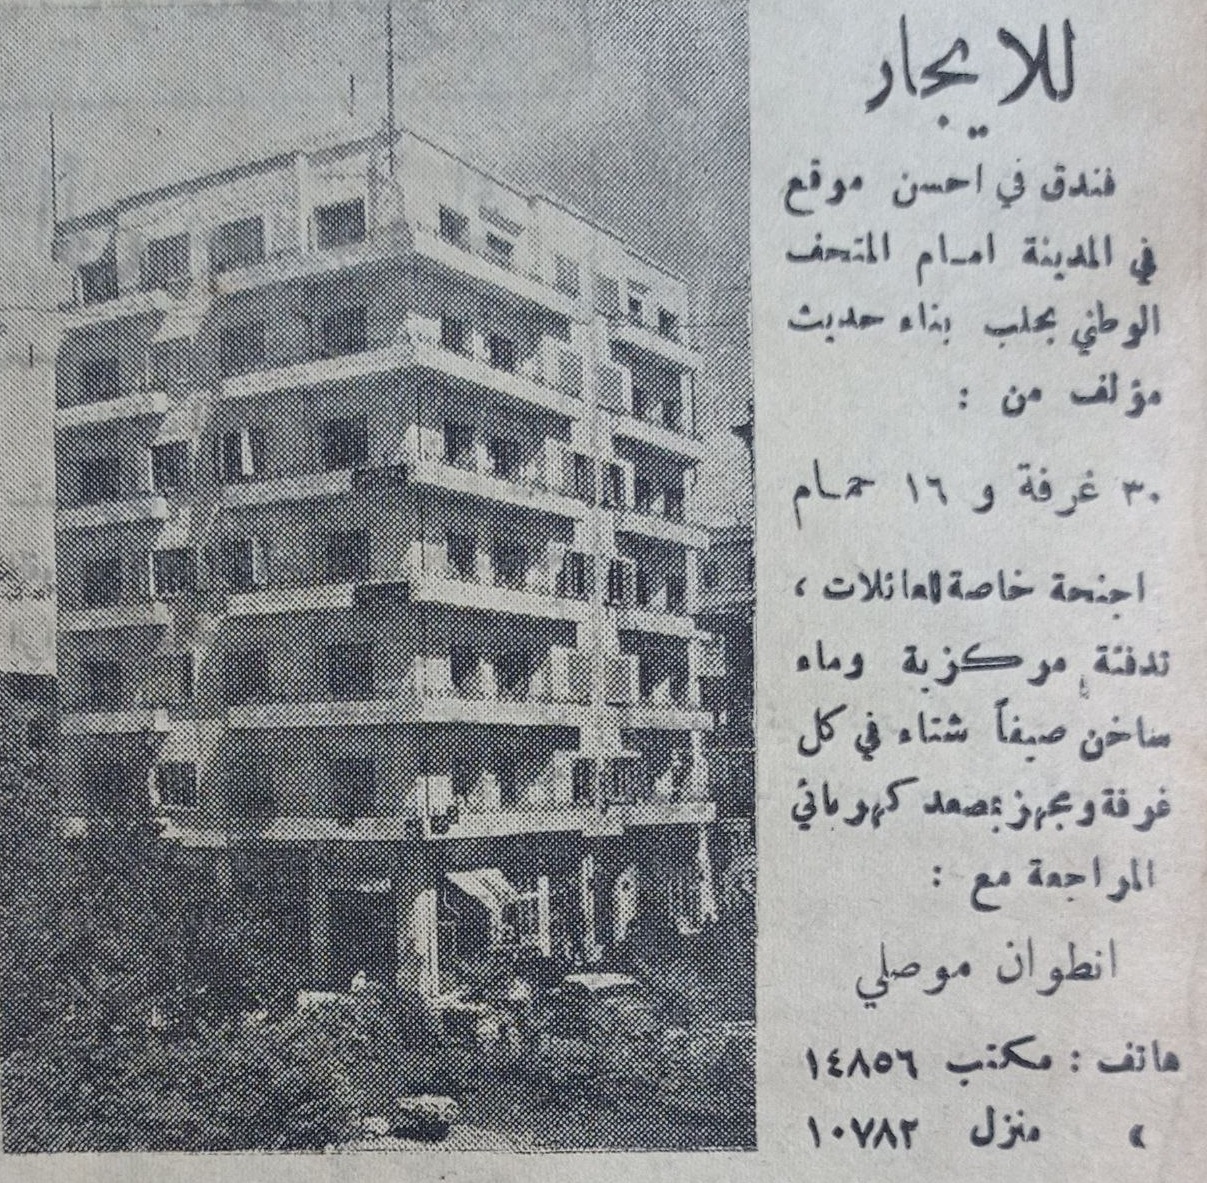 التاريخ السوري المعاصر - إعلان فندق أنطون موصلي في حلب عام 1956